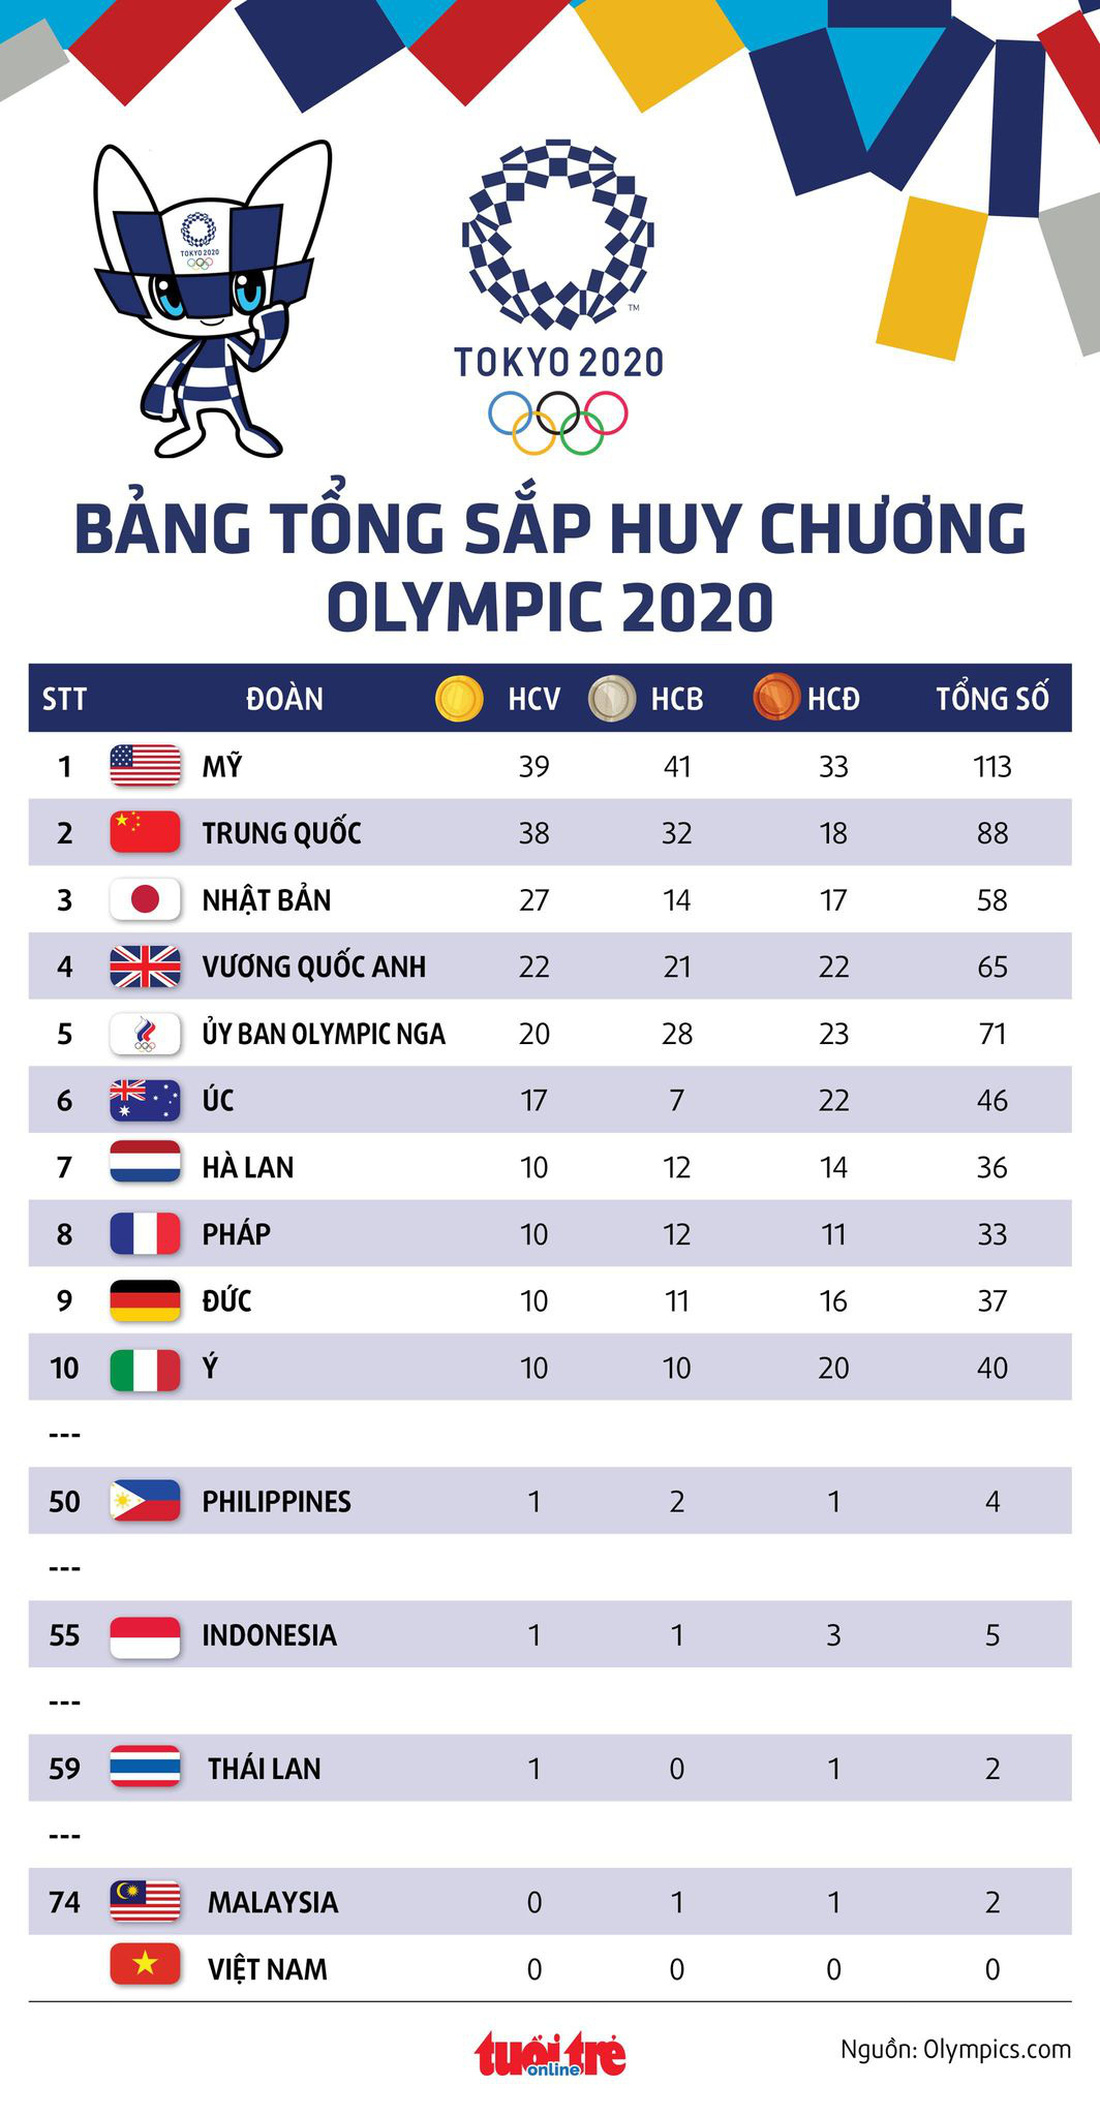 Tung cú nước rút thần tốc, Mỹ vượt mặt Trung Quốc giành ngôi nhất toàn đoàn ở Olympic 2020 - Ảnh 2.